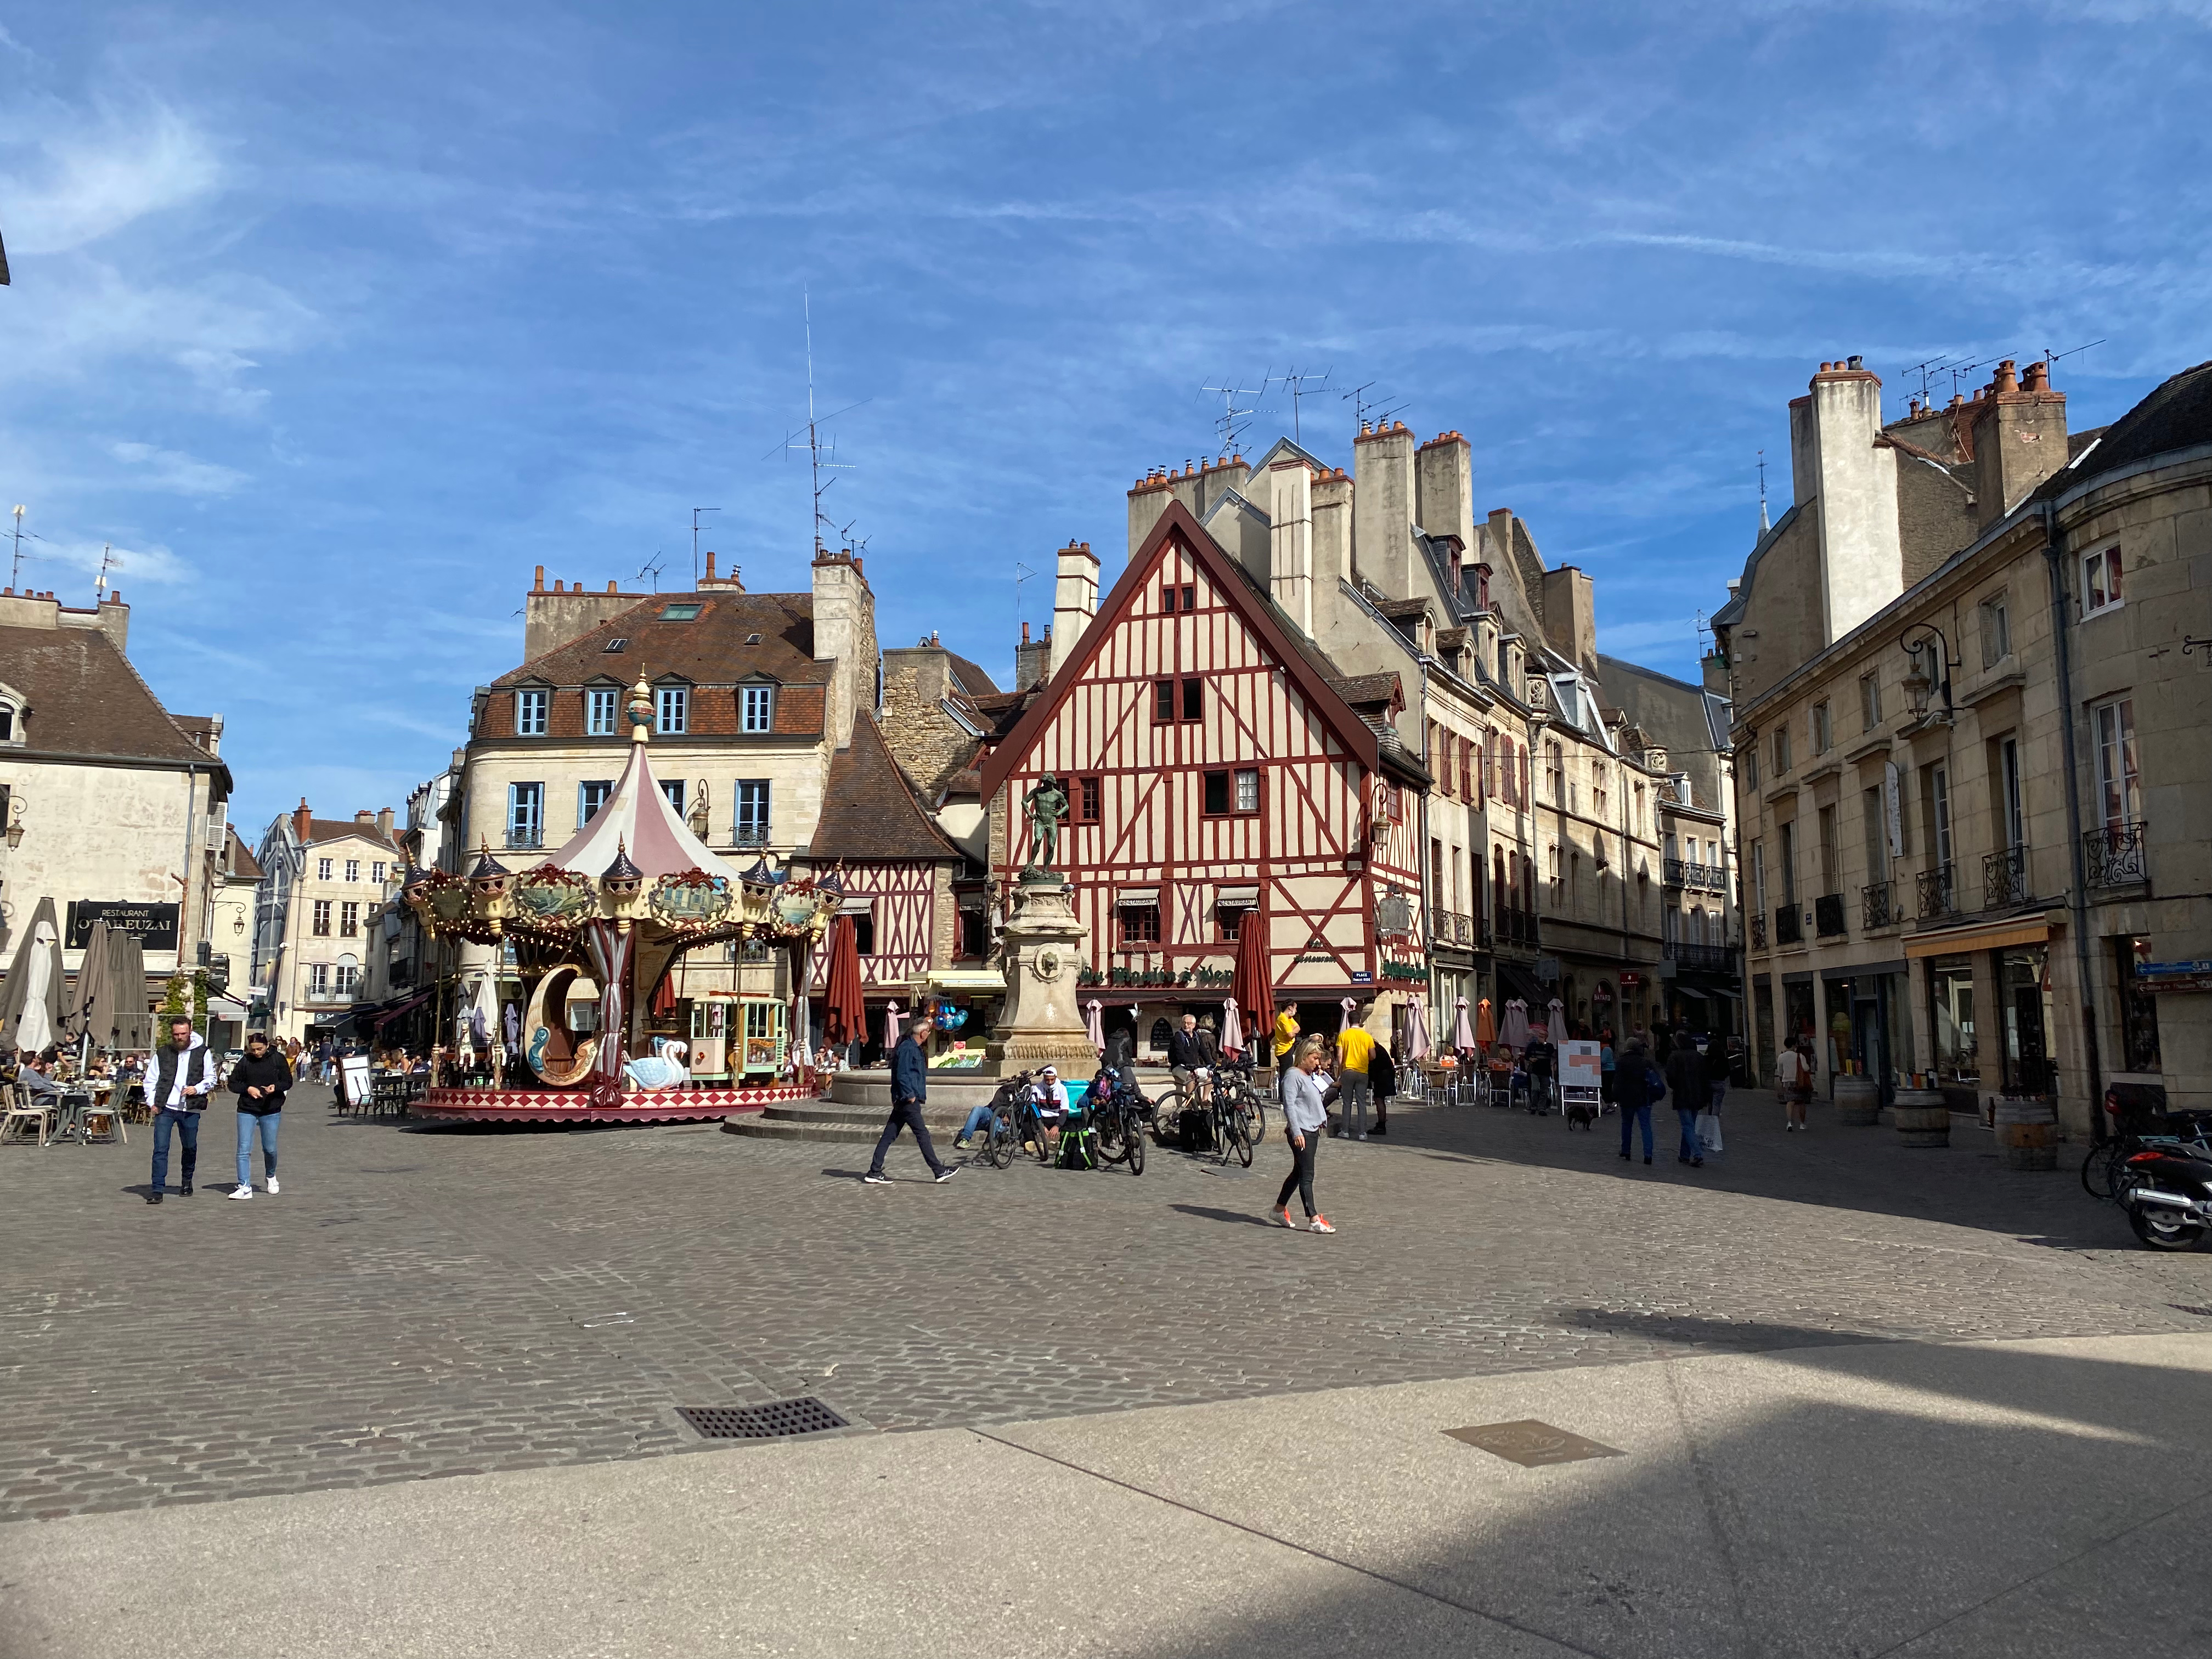 François Rude Square in Dijon